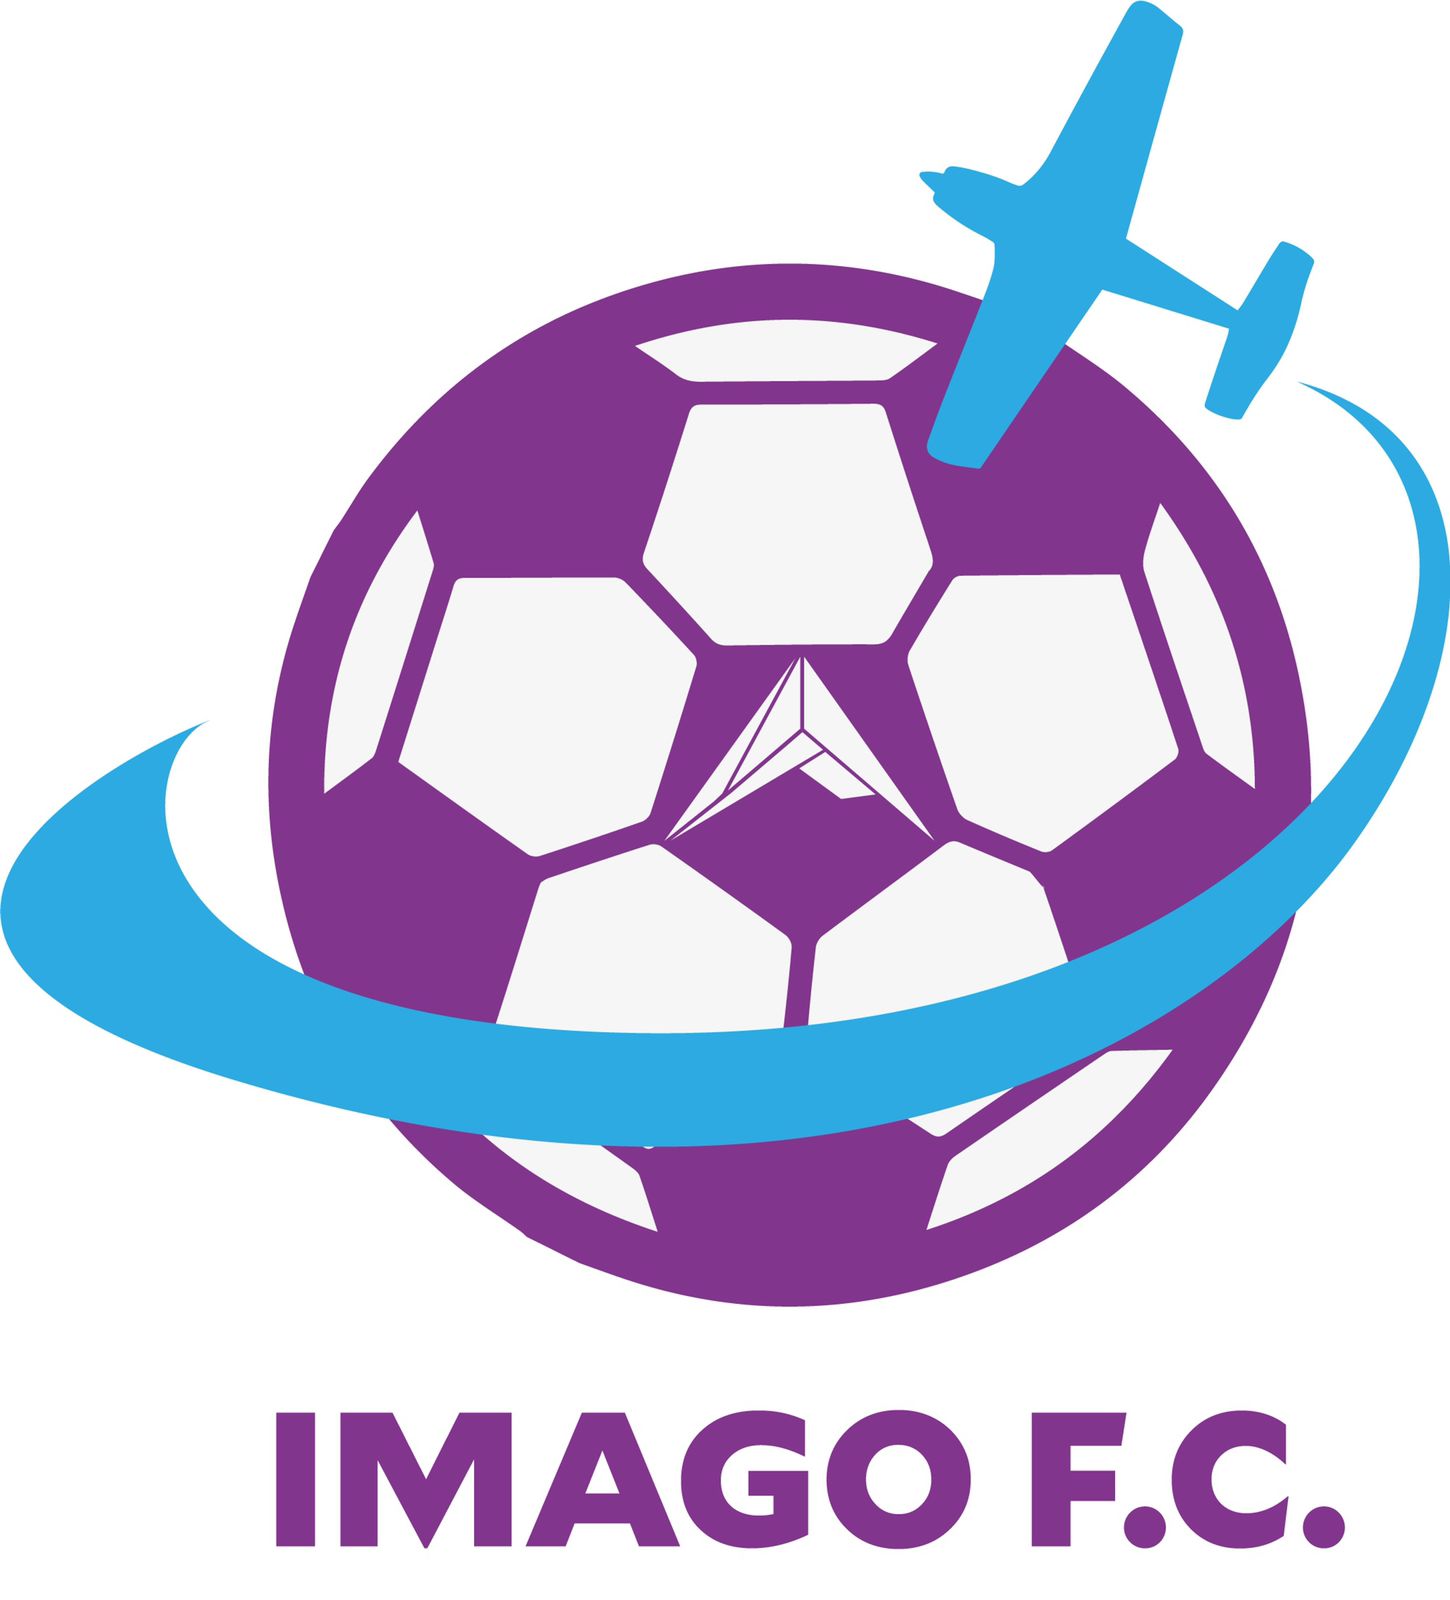 IMAGO FC